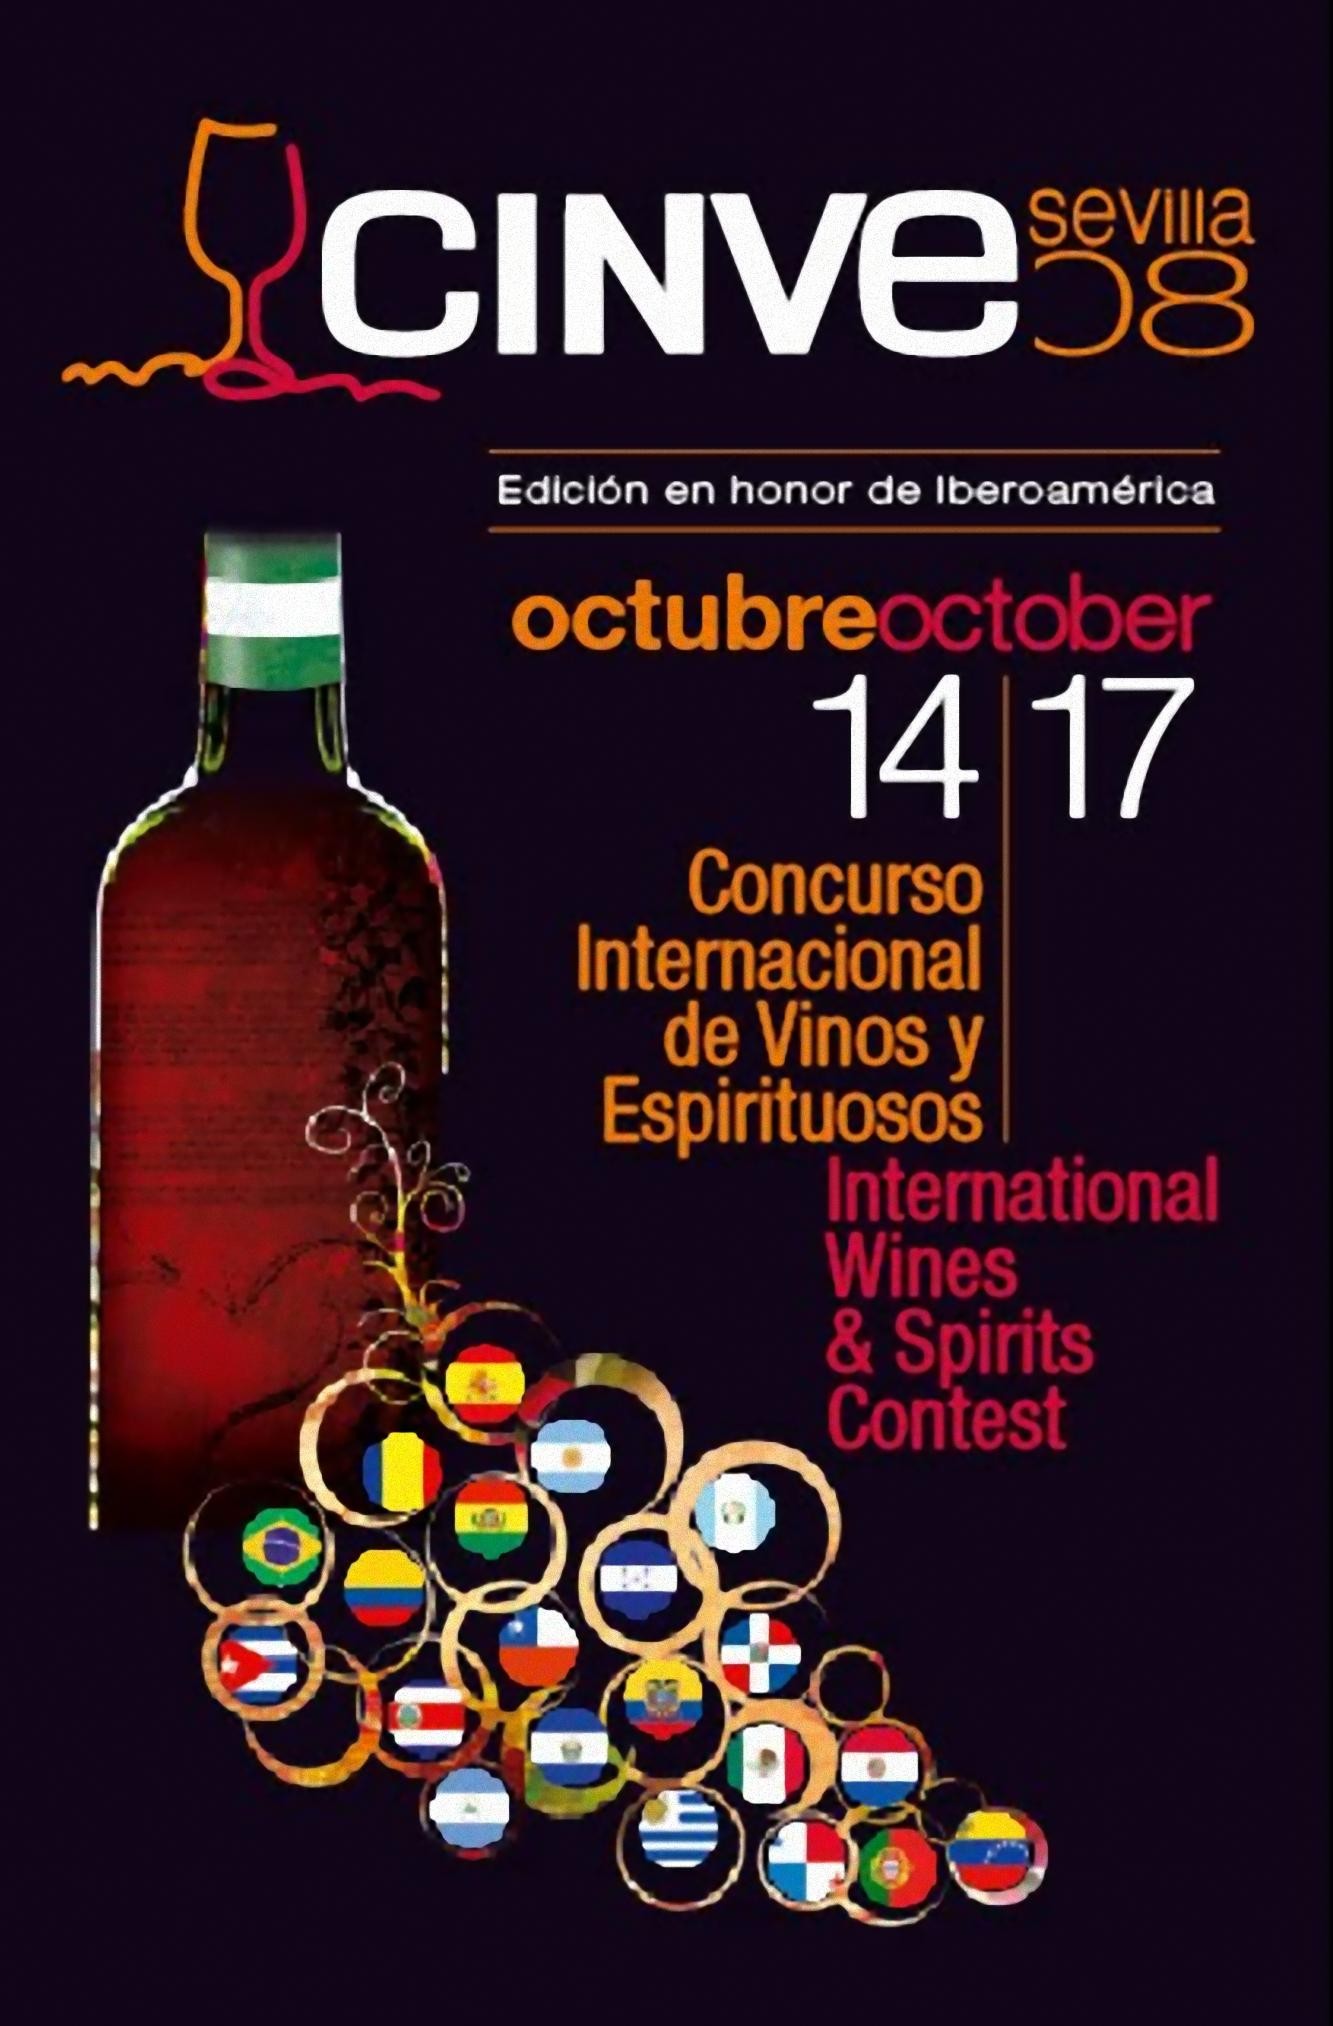 Concurso Internacional de Vinos y Espirituosos “CINVE 2008”